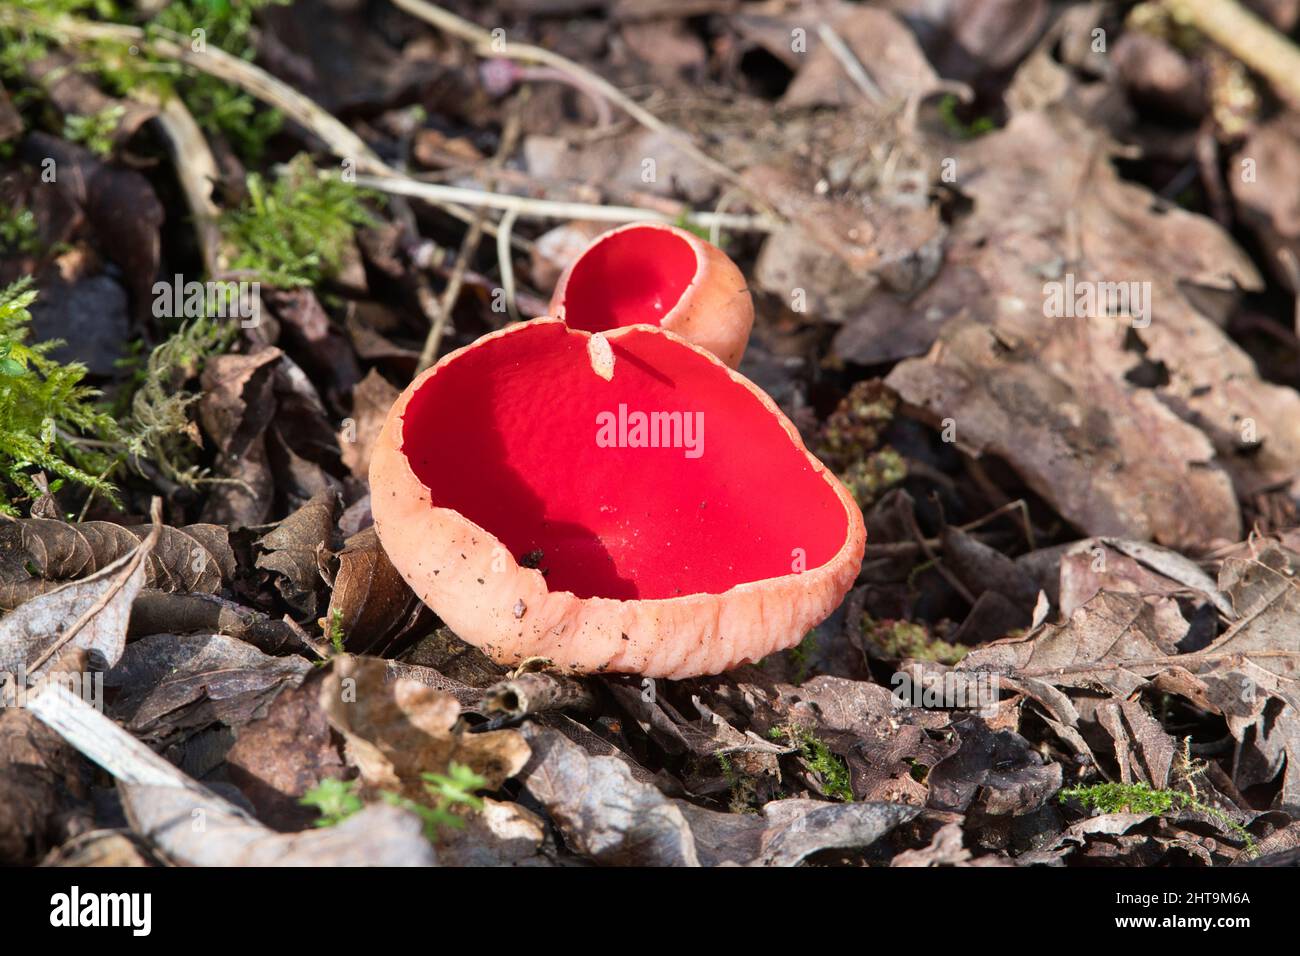 Scarlatto Elf Cup (Sarcoscopypha austriaca), un fungo di fine inverno e primavera Foto Stock